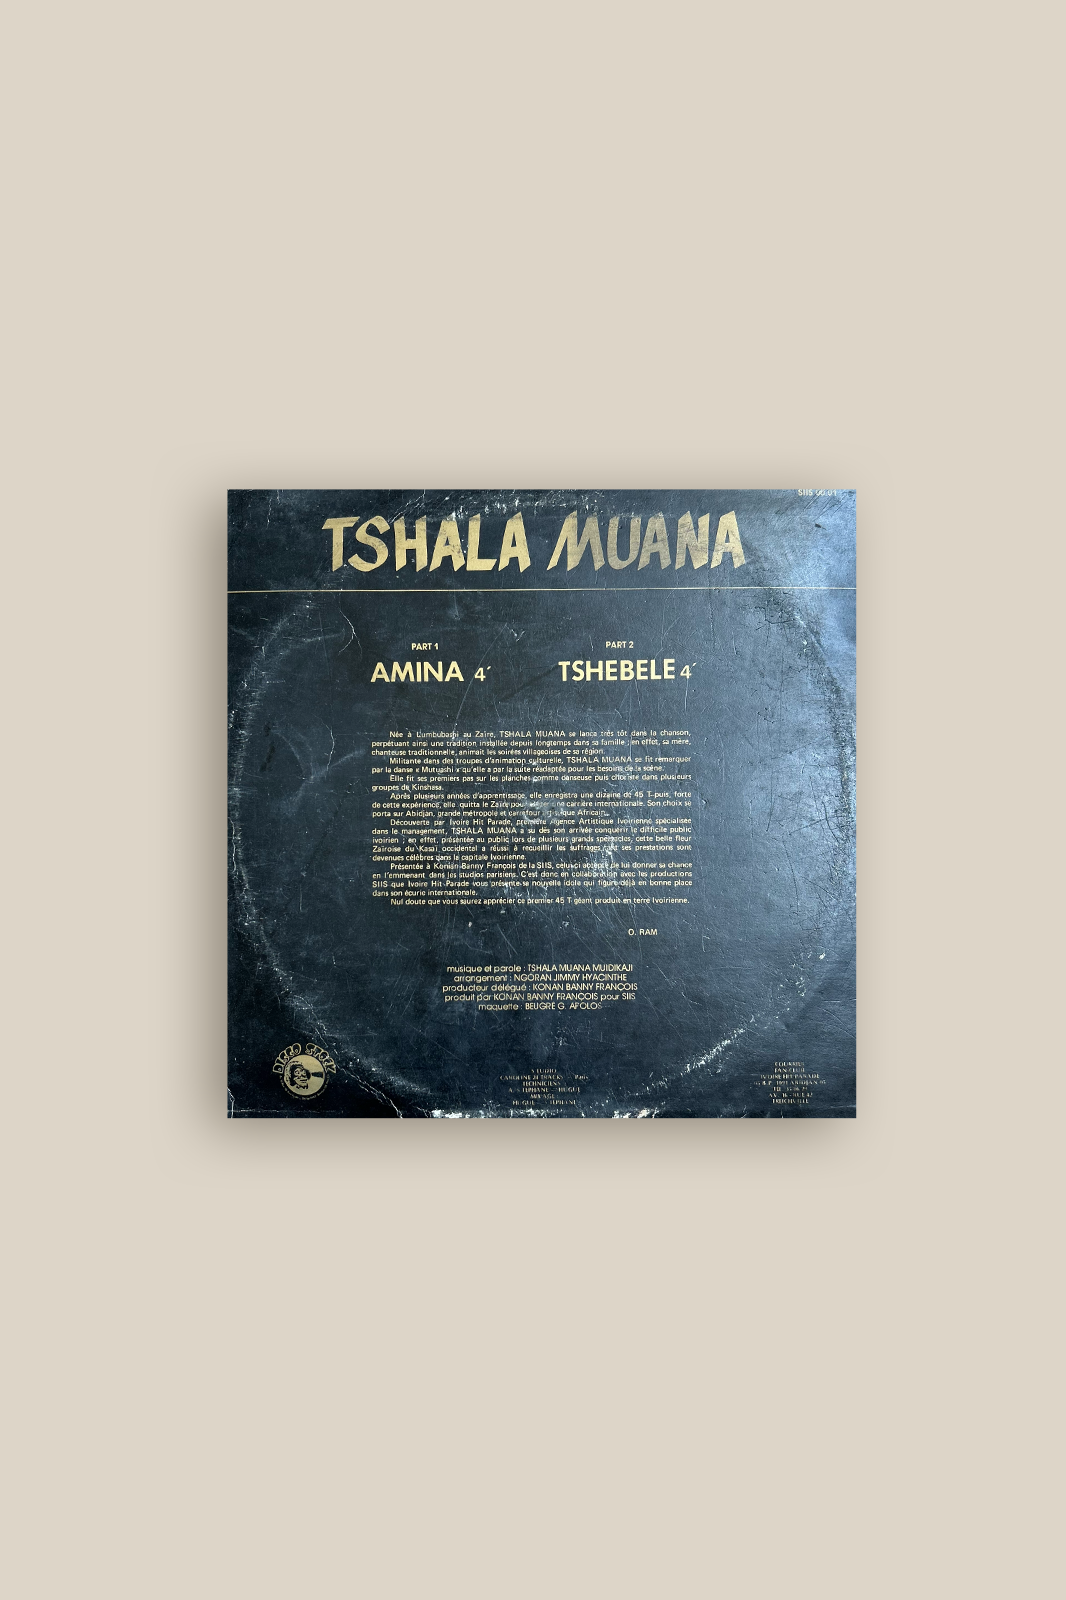 Tshala Muana - Amina Tshebele